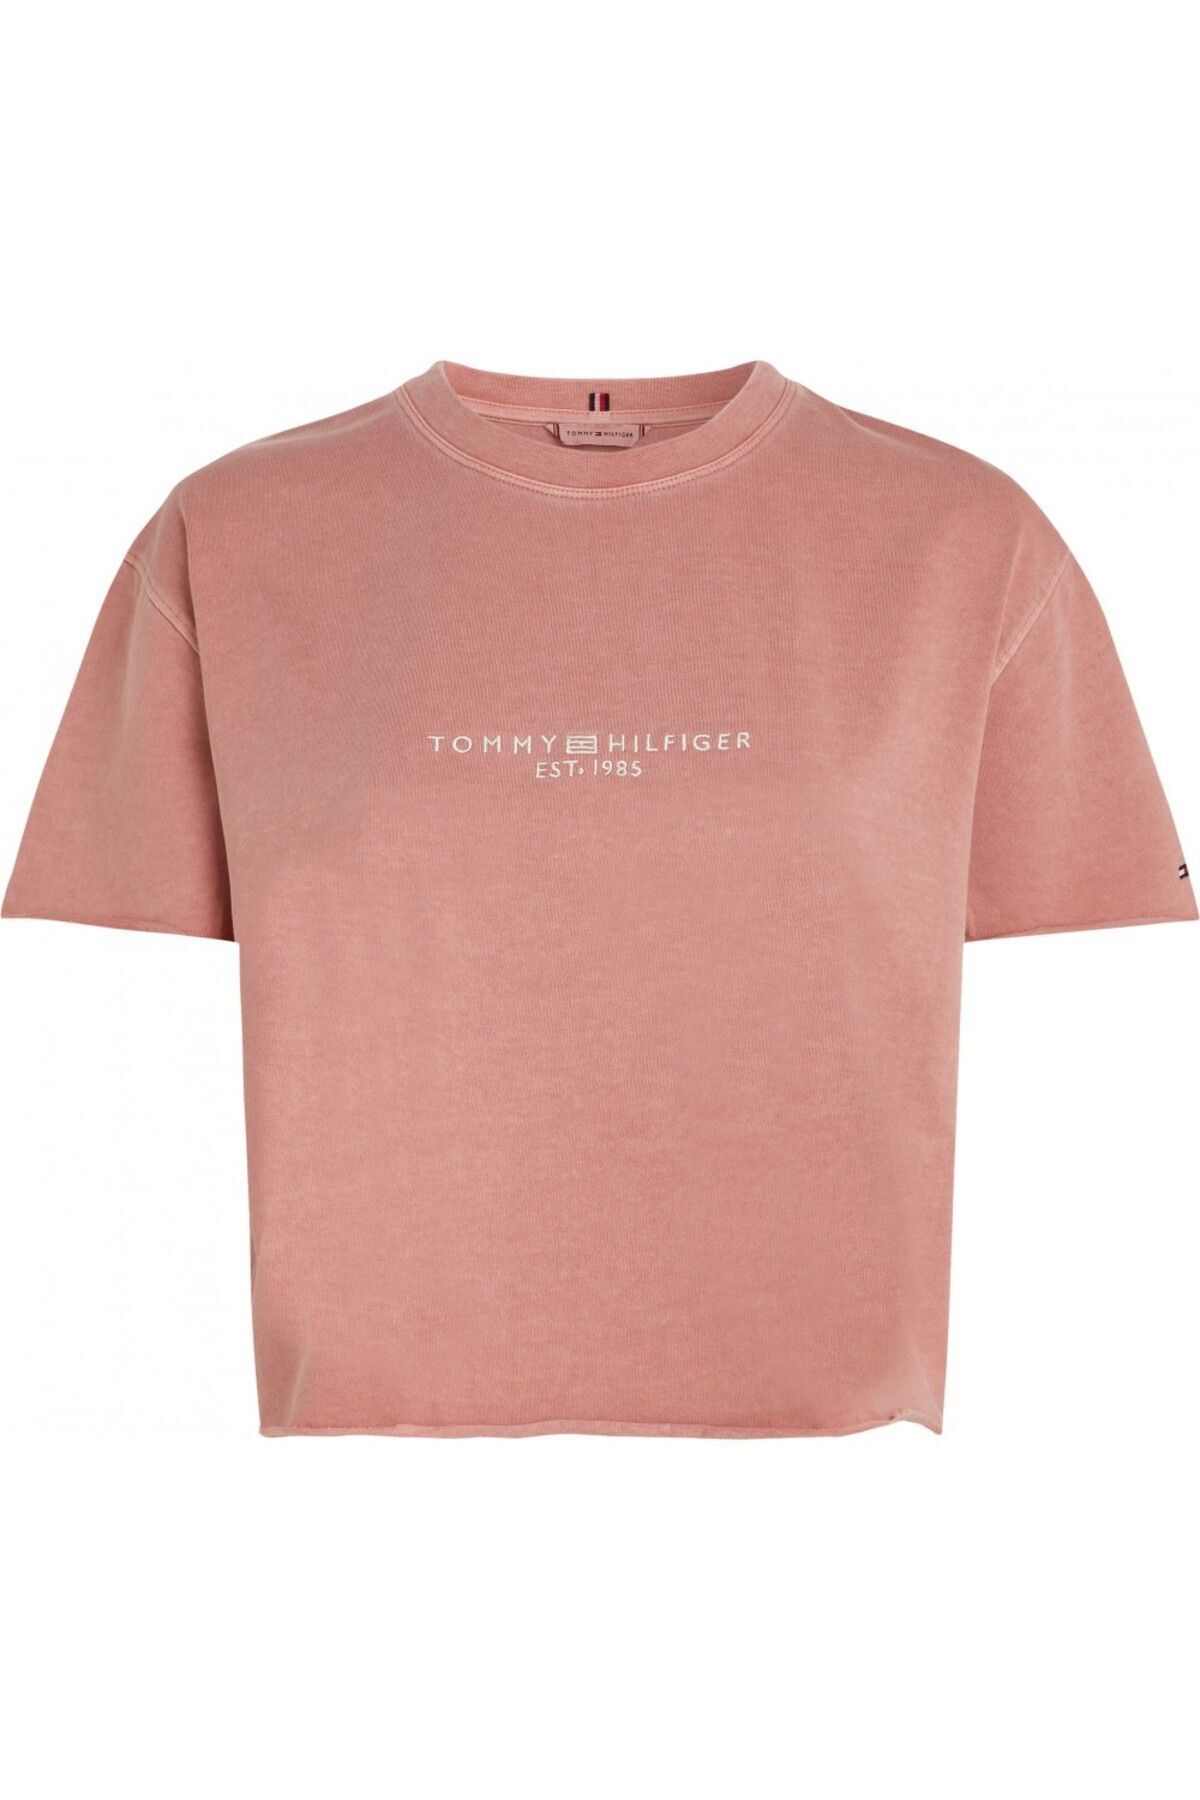 Tommy Hilfiger Kadın Sıfır Yaka Marka Logolu Pembe T-Shirt WW0WW41202-TJ5